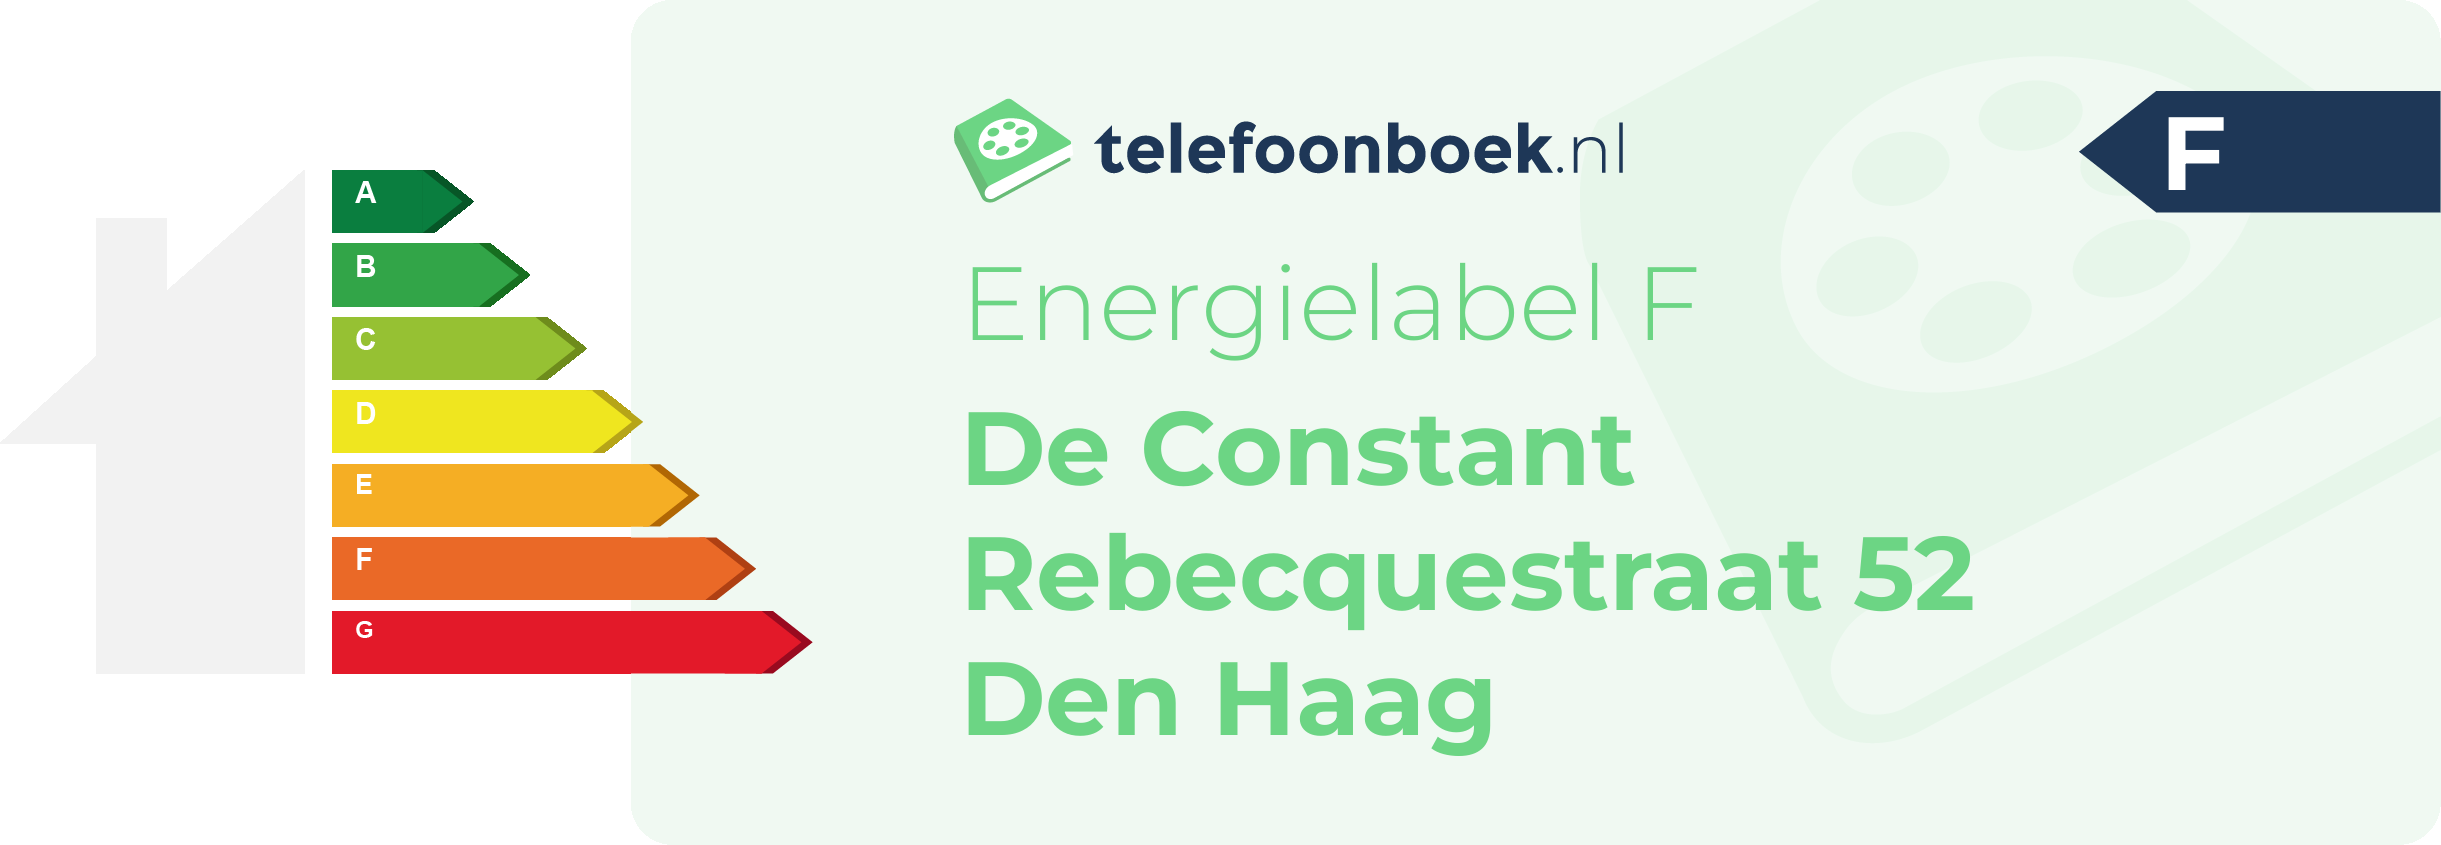 Energielabel De Constant Rebecquestraat 52 Den Haag